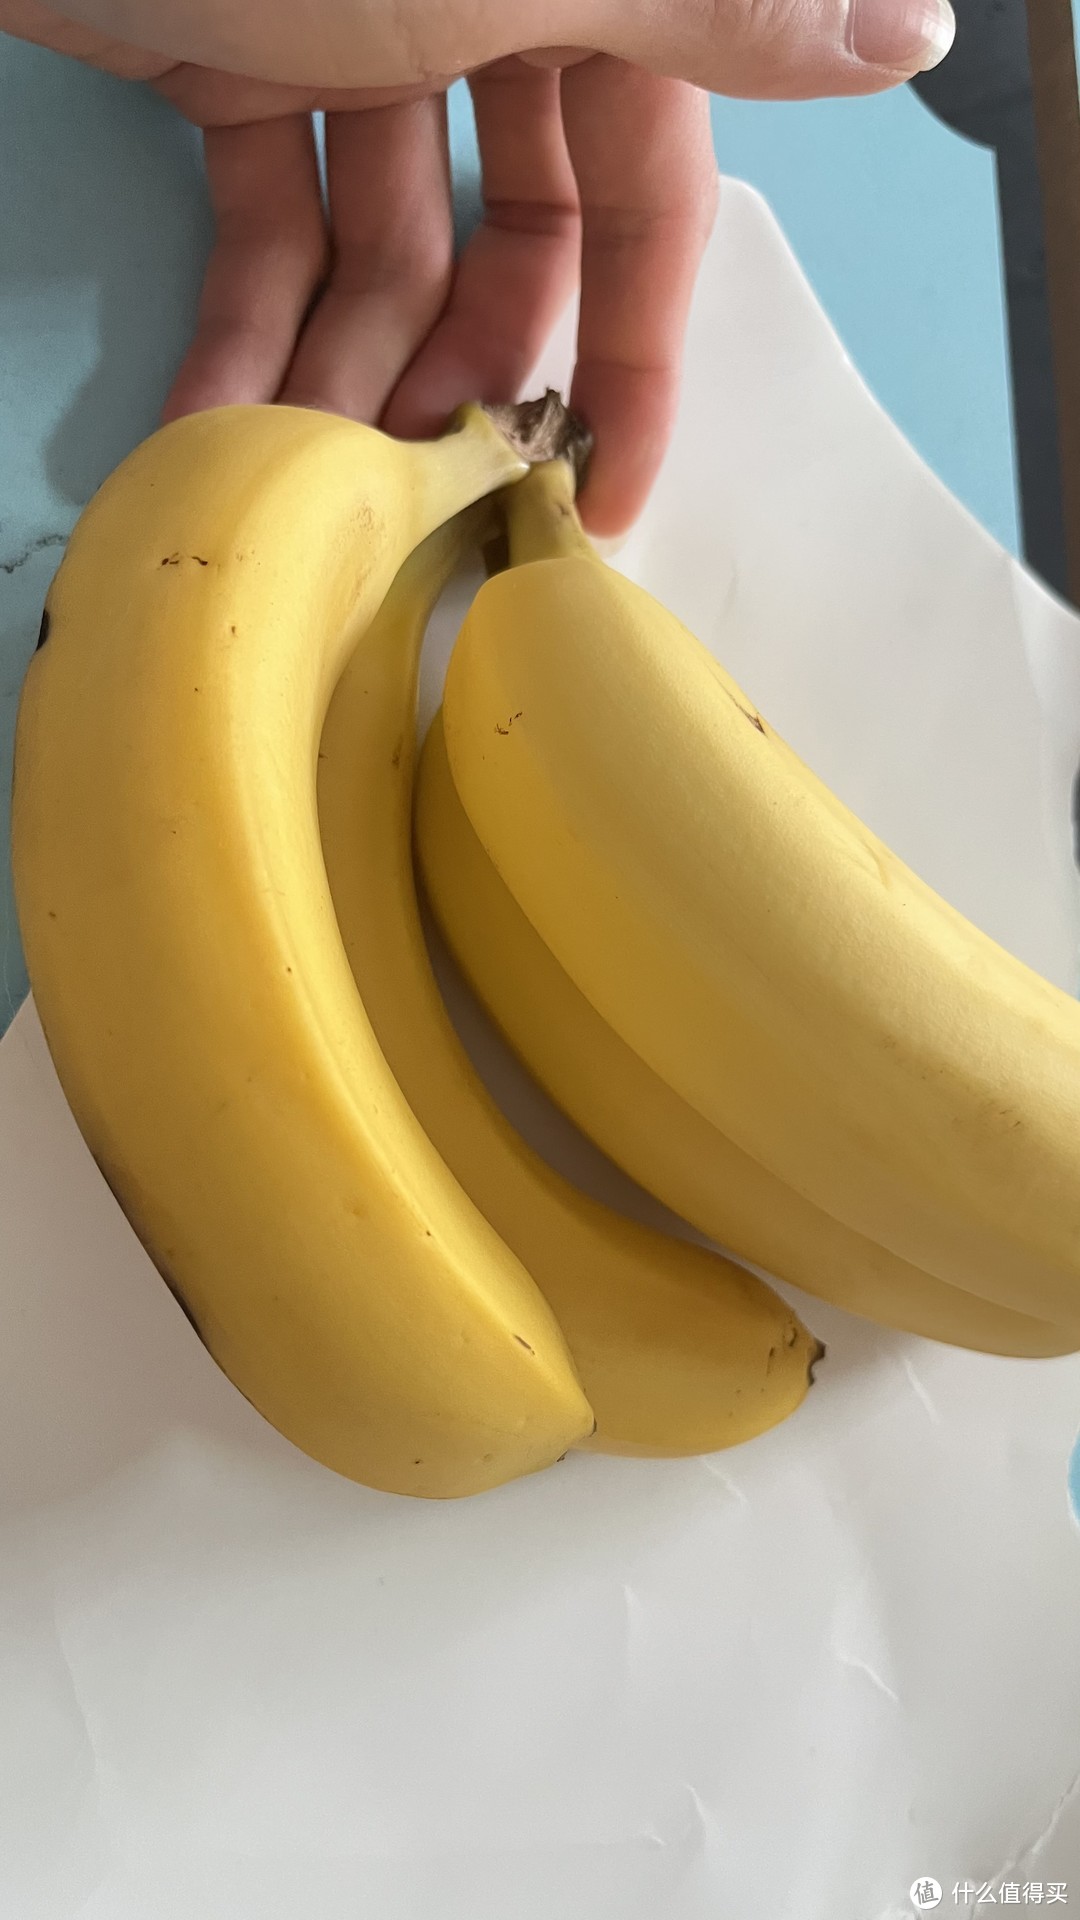 没想到在淘宝上买的香蕉还挺好吃的。